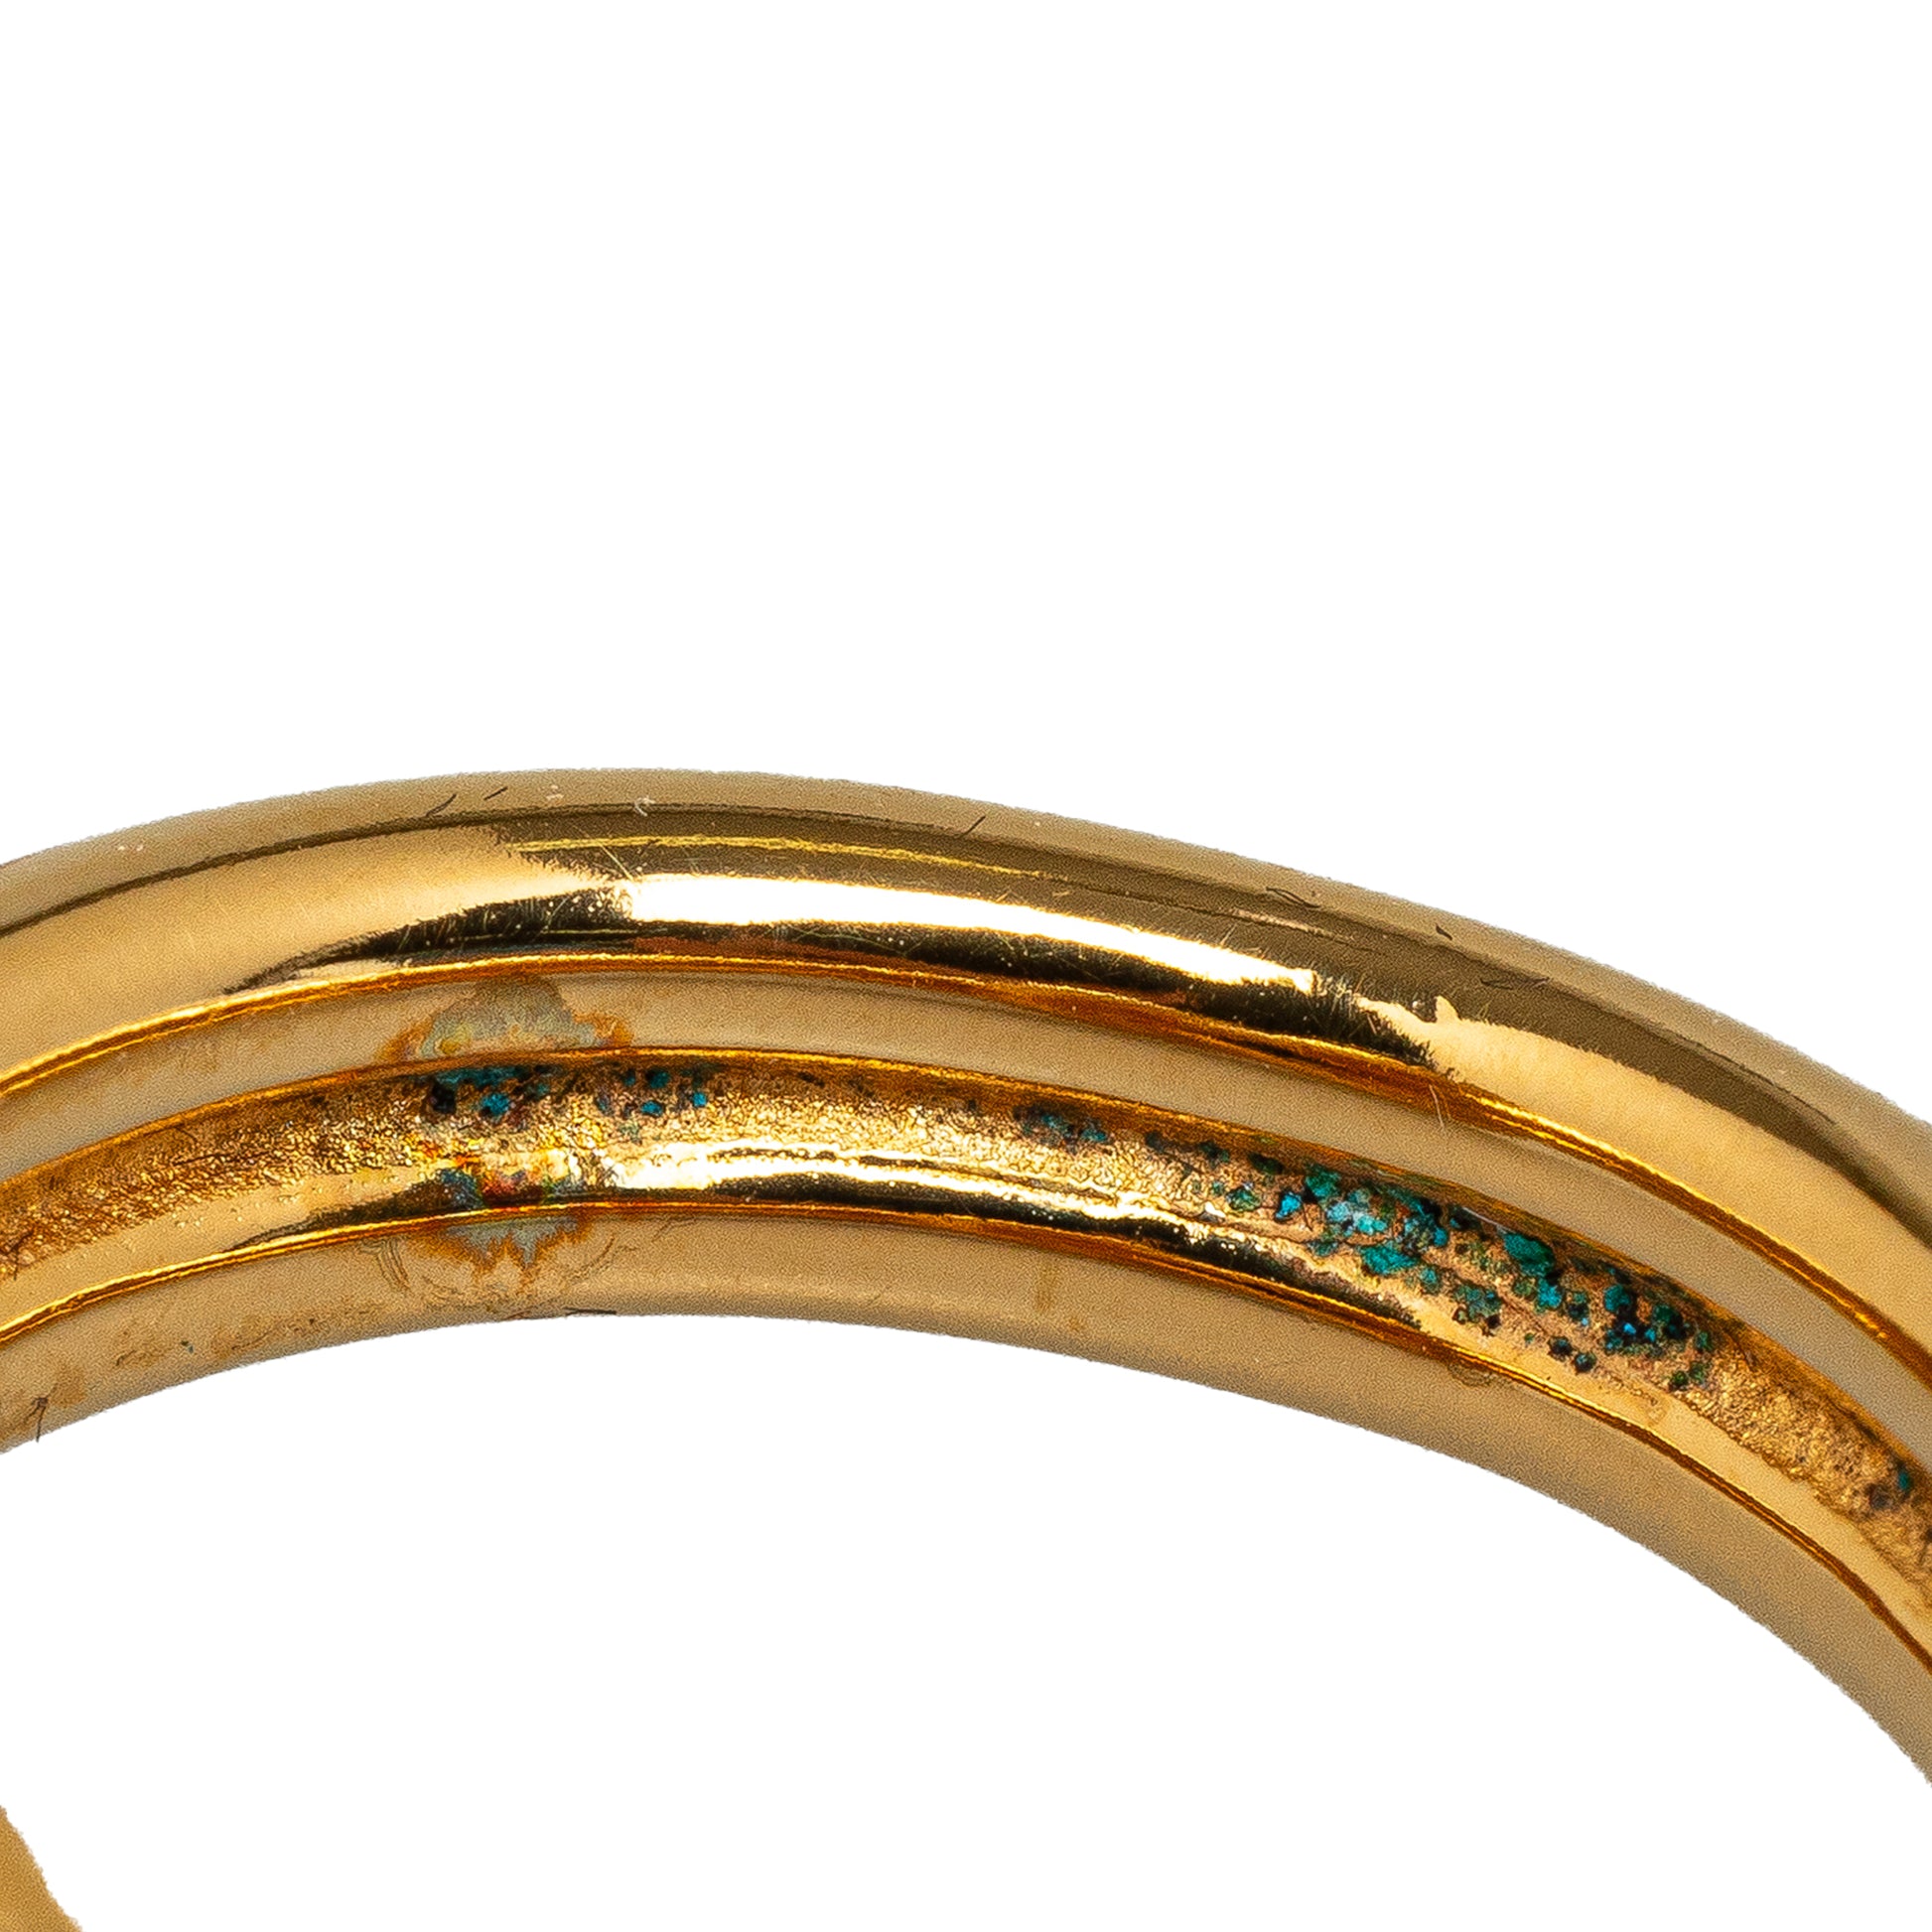 Regate Scarf Ring Gold - Gaby Paris